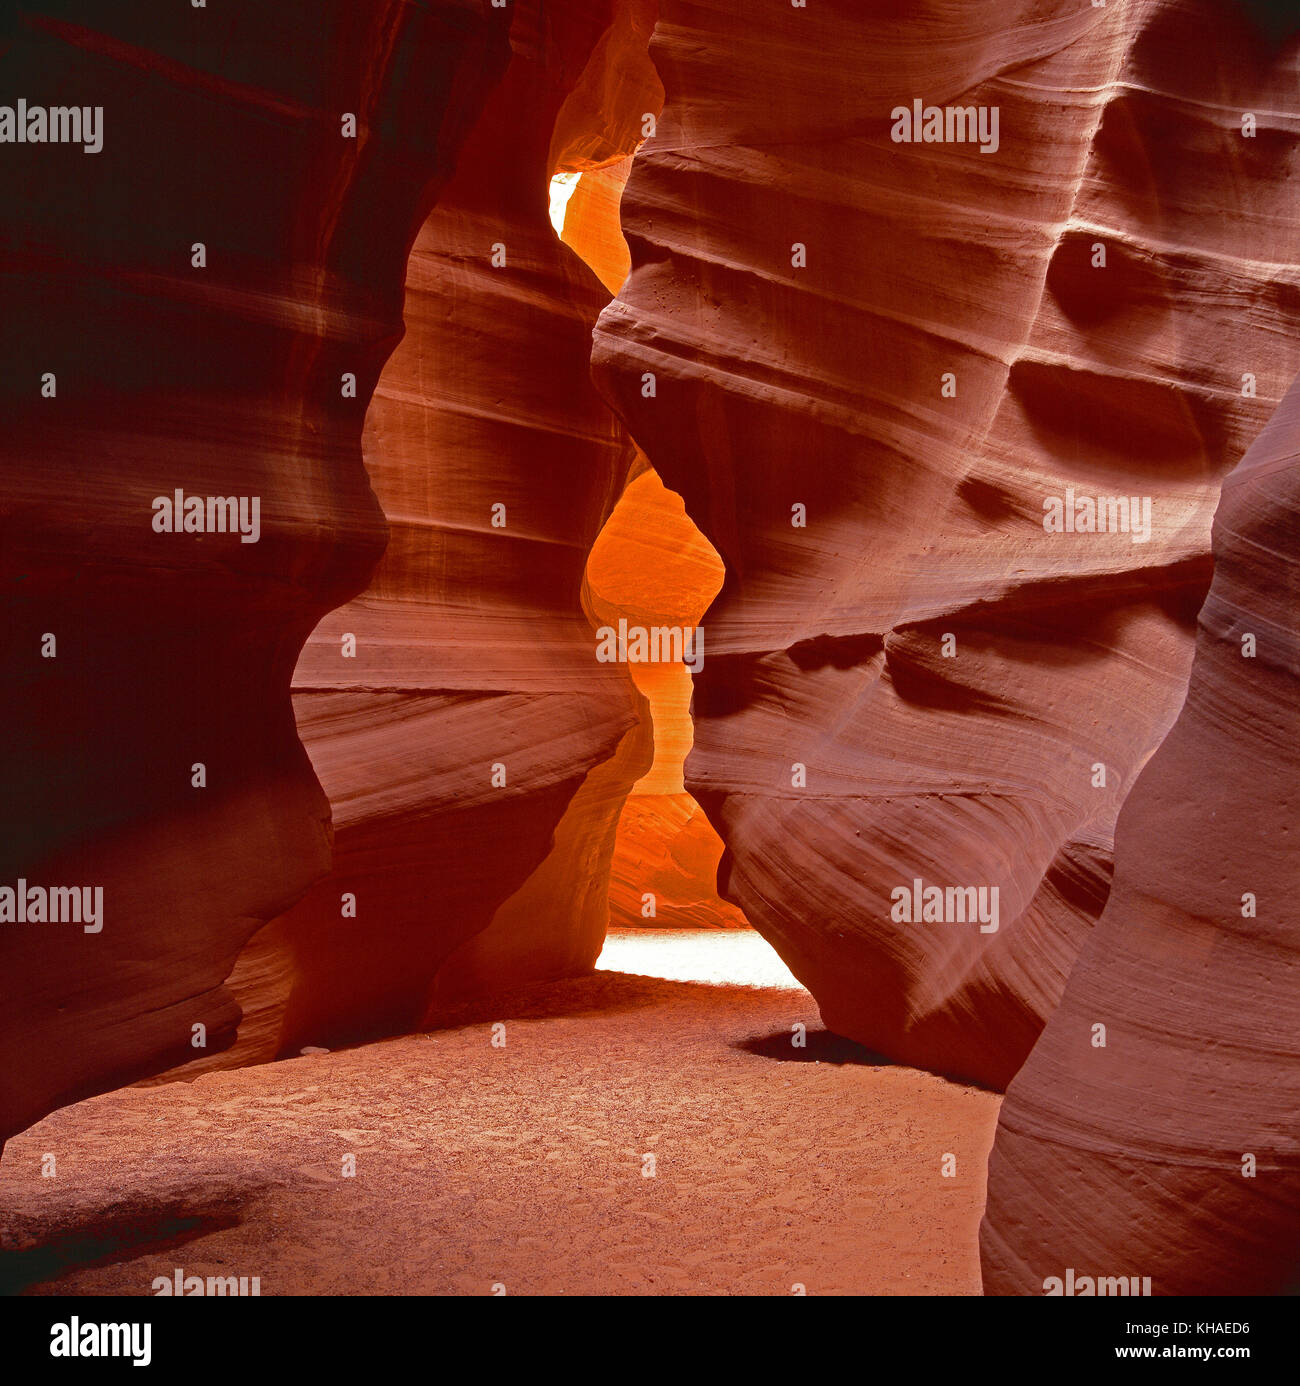 Stati Uniti d'America. In Arizona. Tomaia Antelope Canyon eroso crepacci formazioni rocciose. Foto Stock